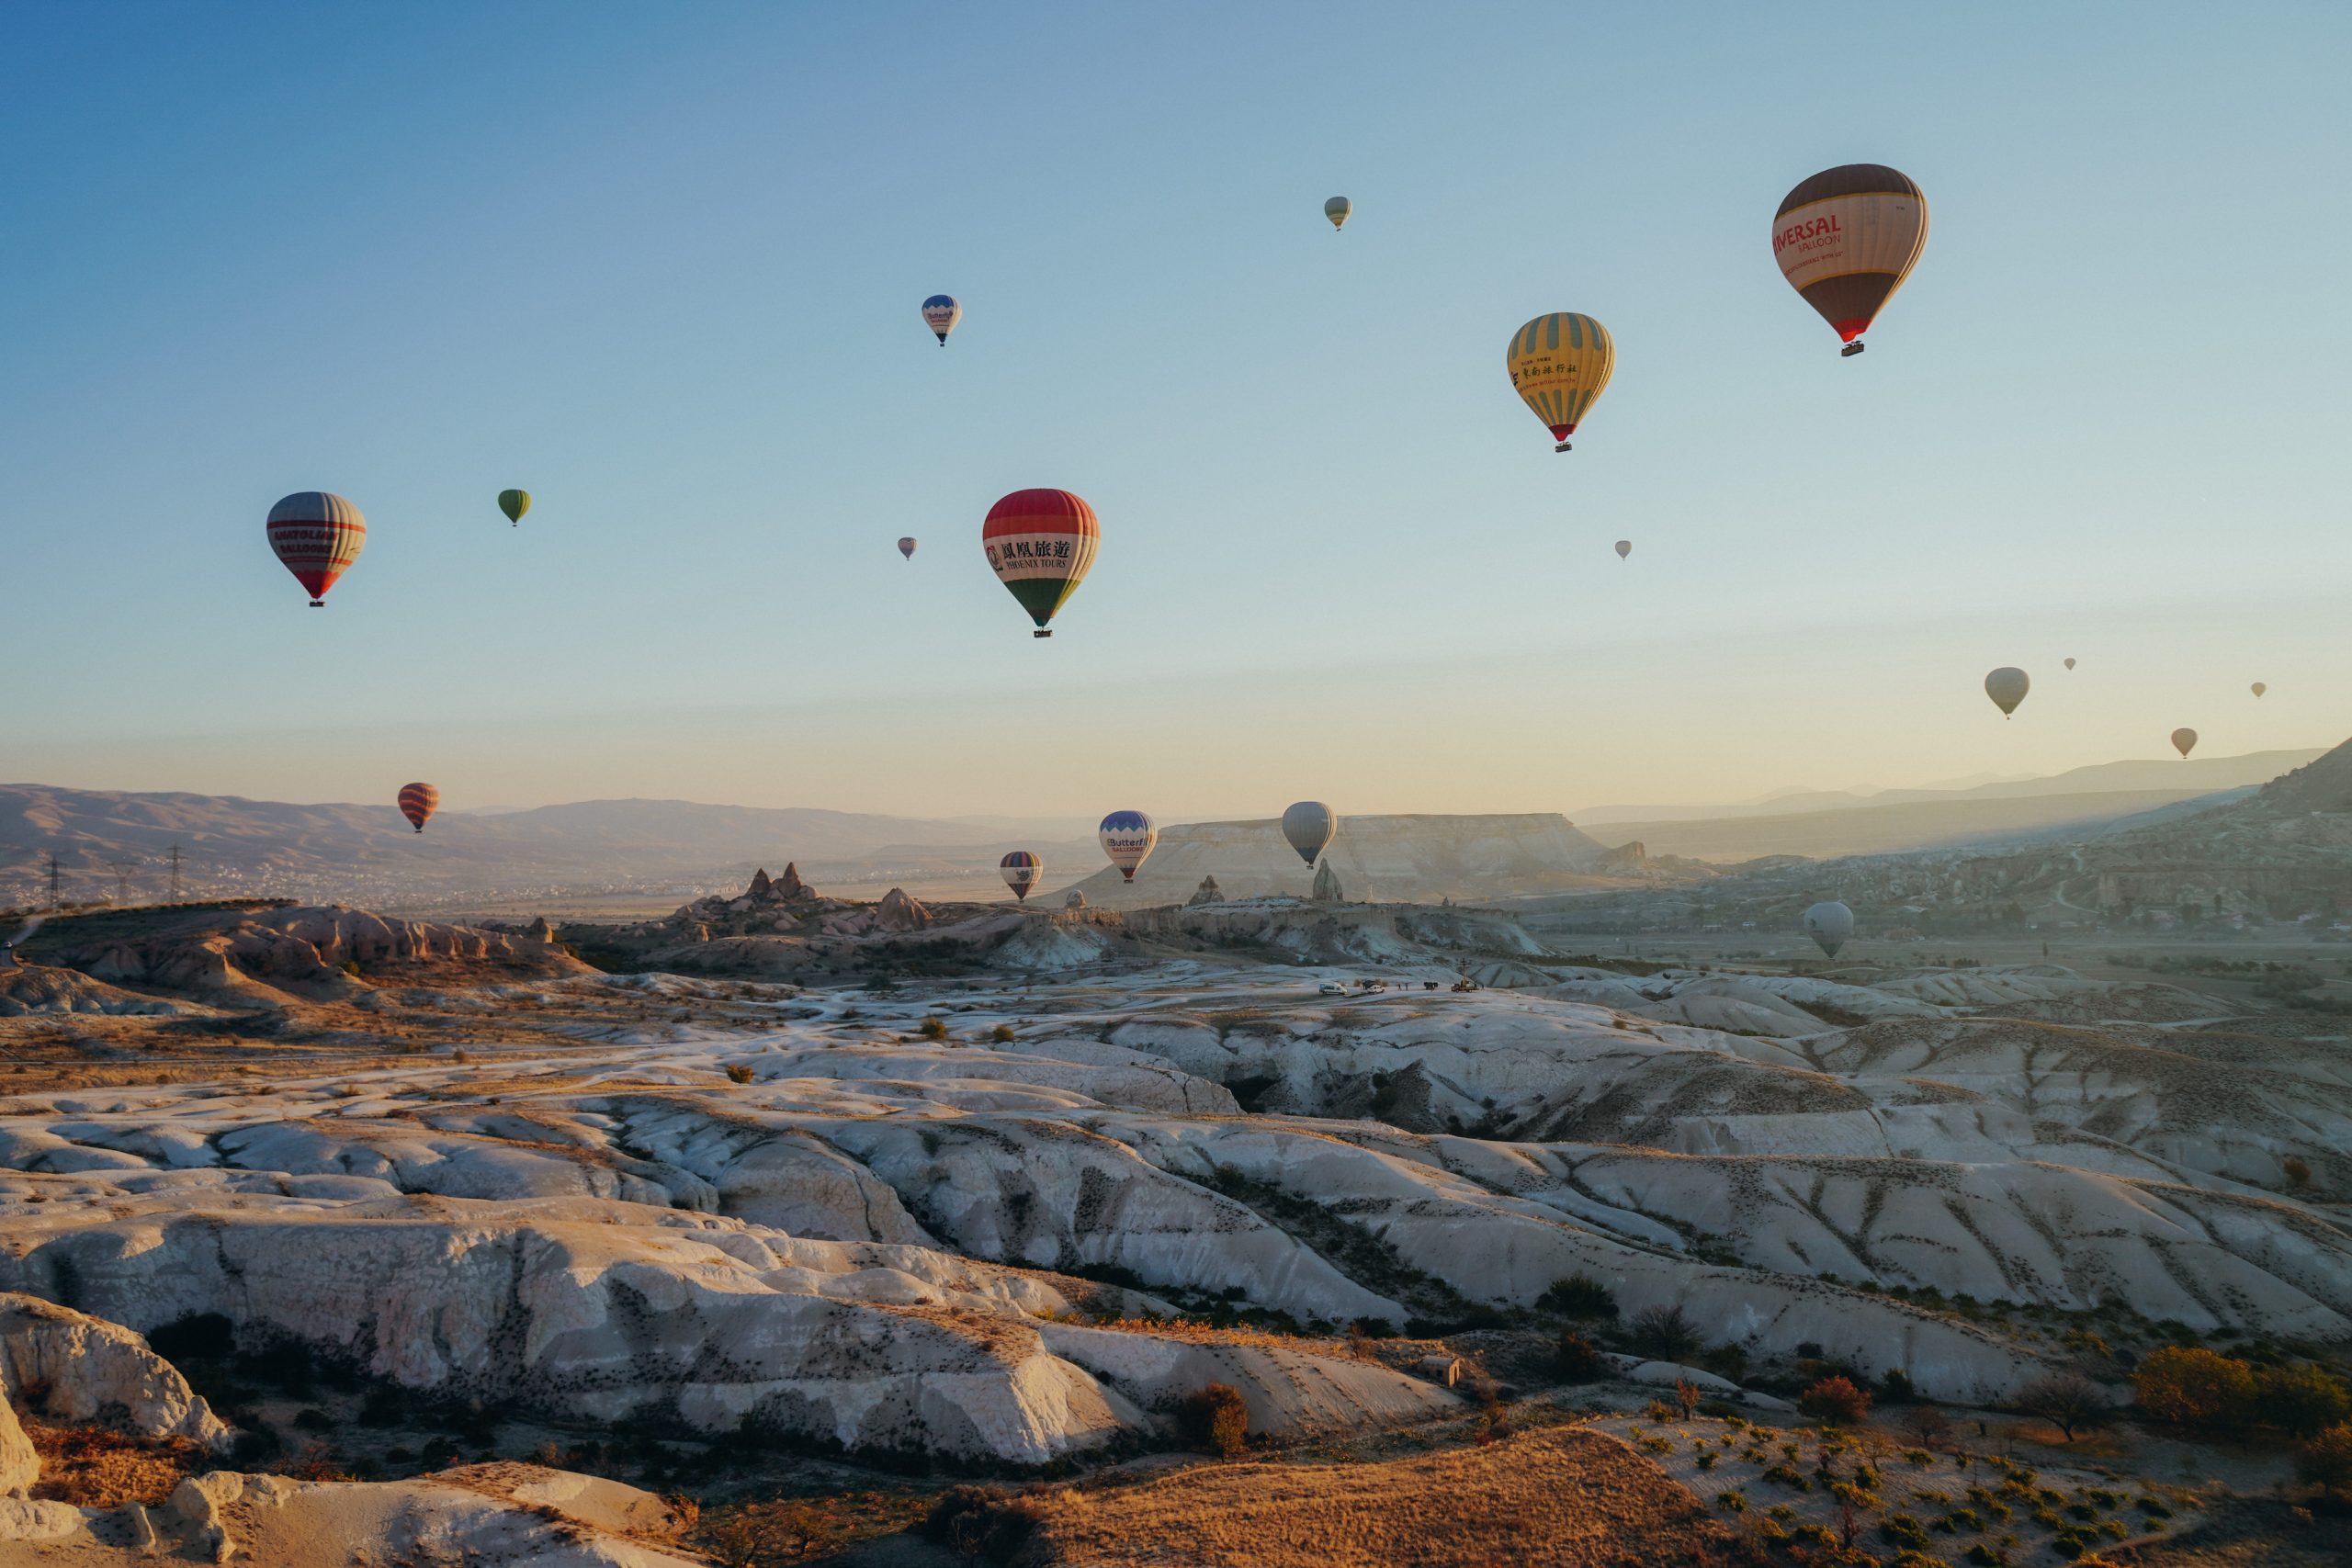 Mending Mana: Naik Balon Udara atau Lihat Saja dari Daratan Red Valley?